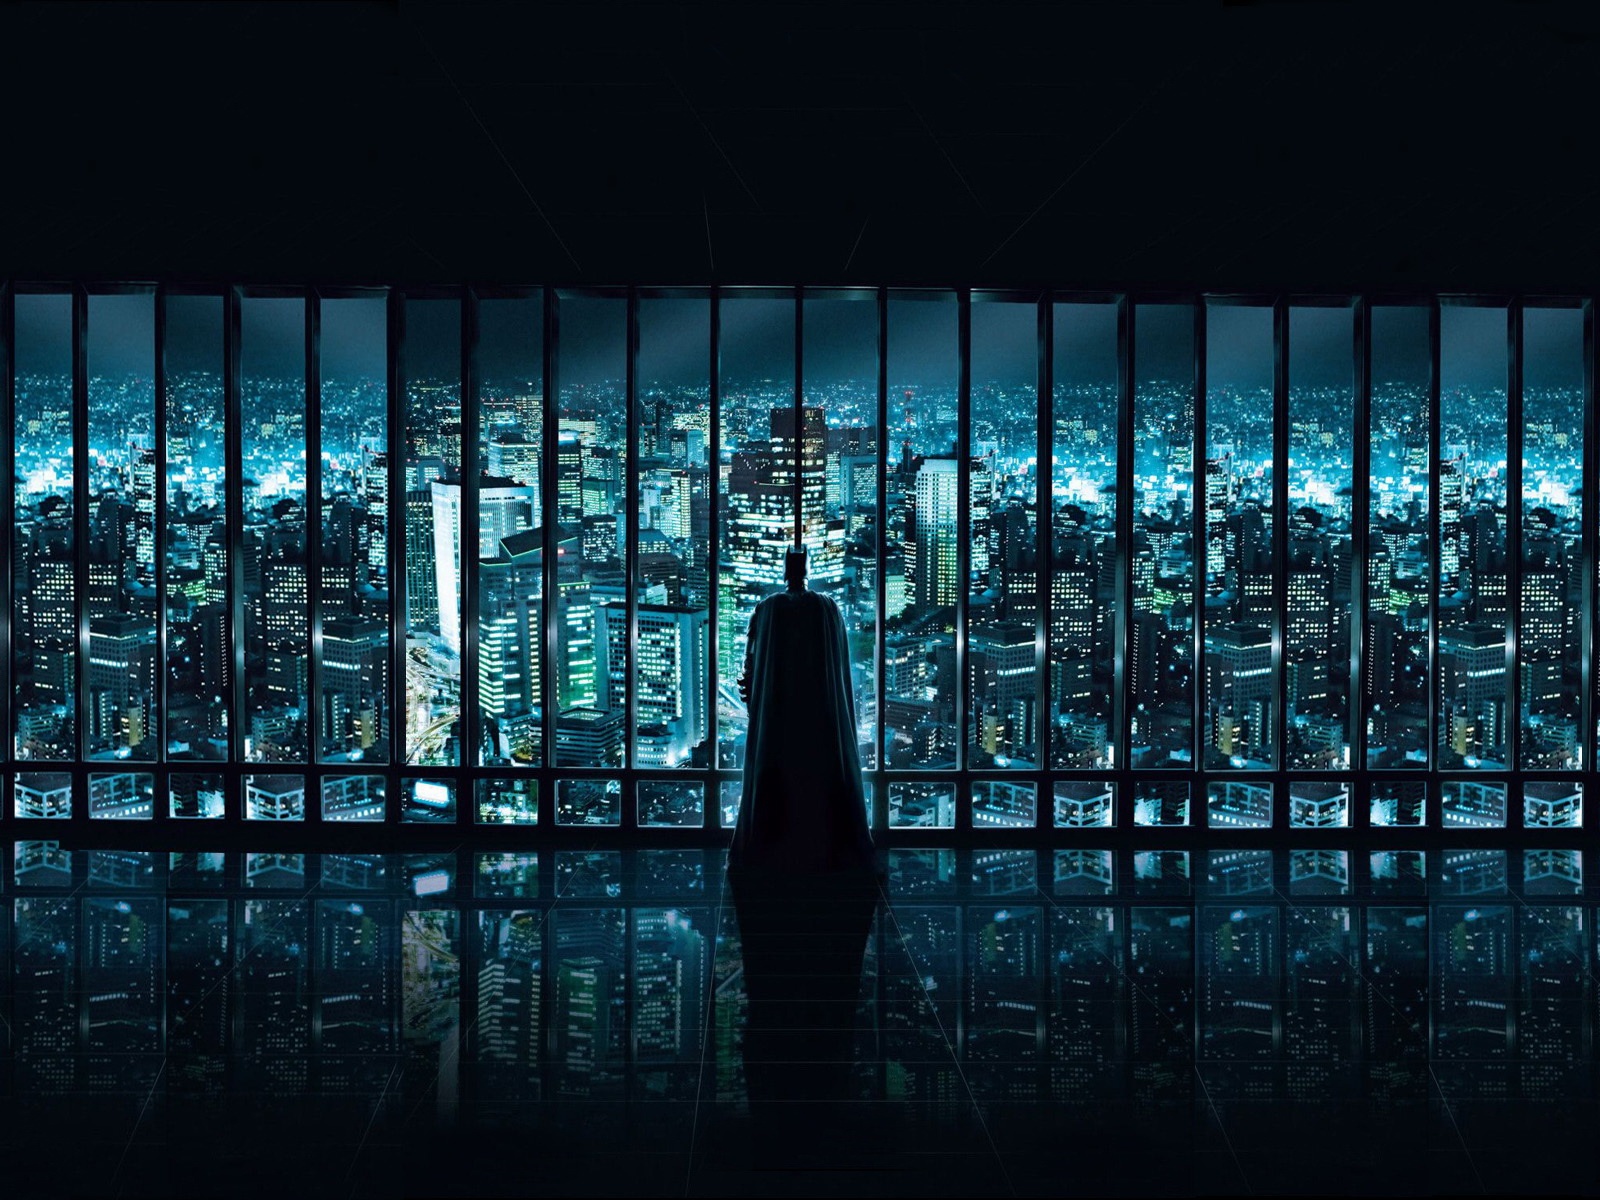 Fond d'ecran Bat and the City